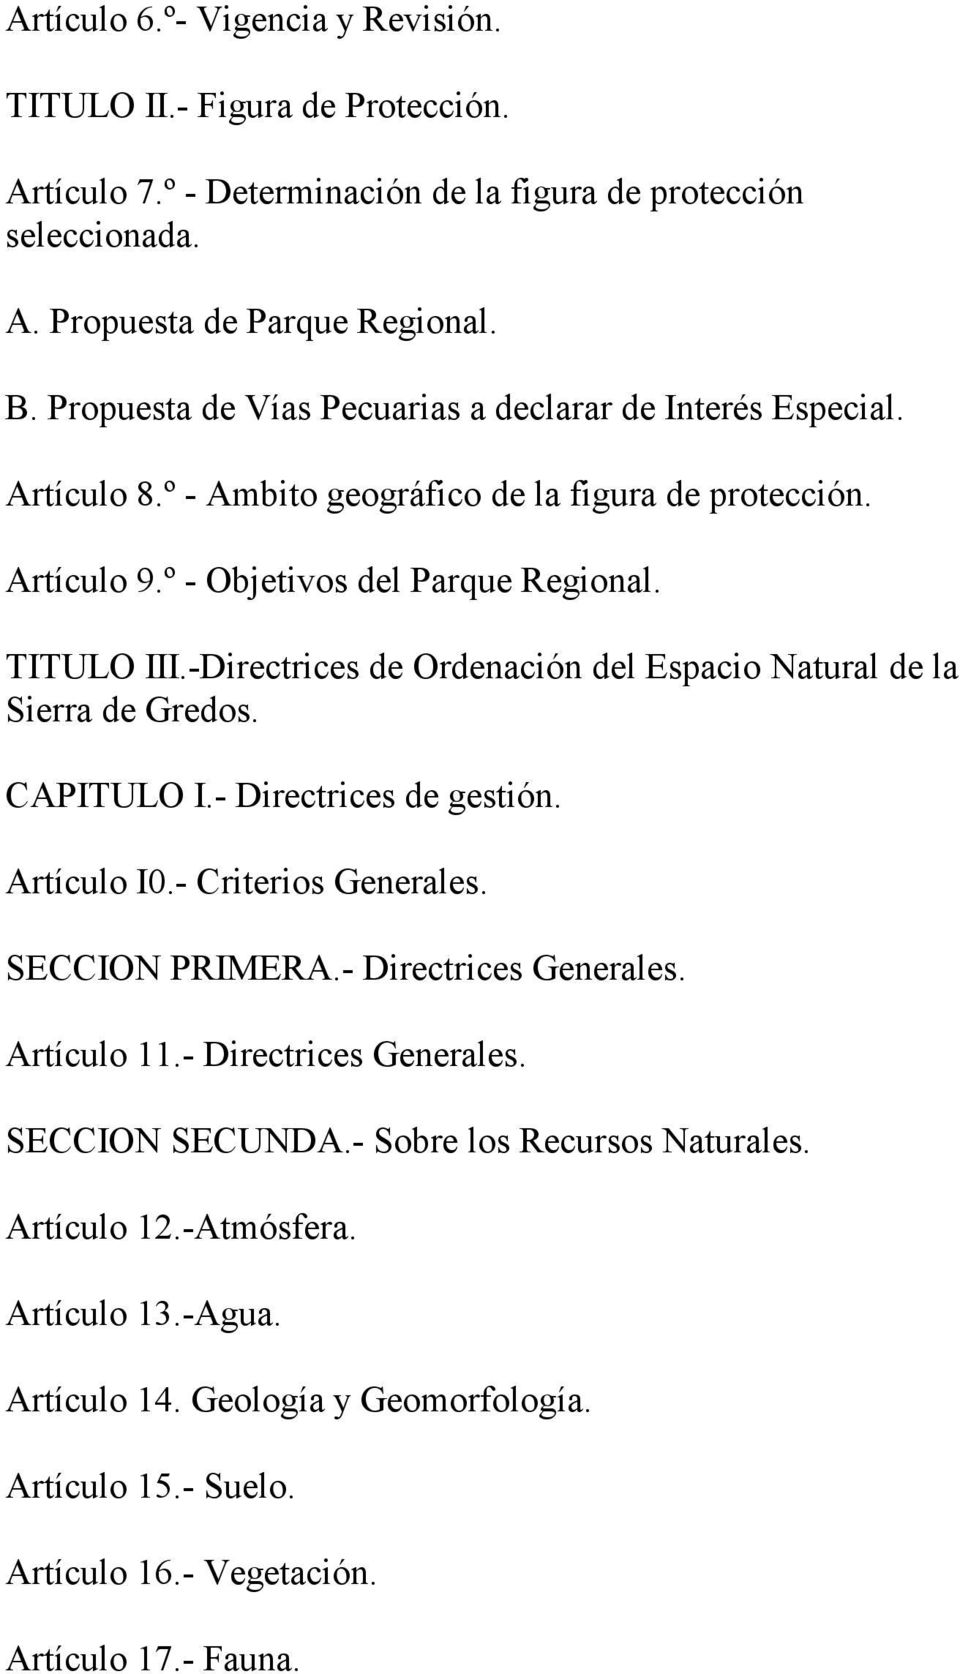 -Directrices de Ordenación del Espacio Natural de la Sierra de Gredos. CAPITULO I.- Directrices de gestión. Artículo I0.- Criterios Generales. SECCION PRIMERA.- Directrices Generales.